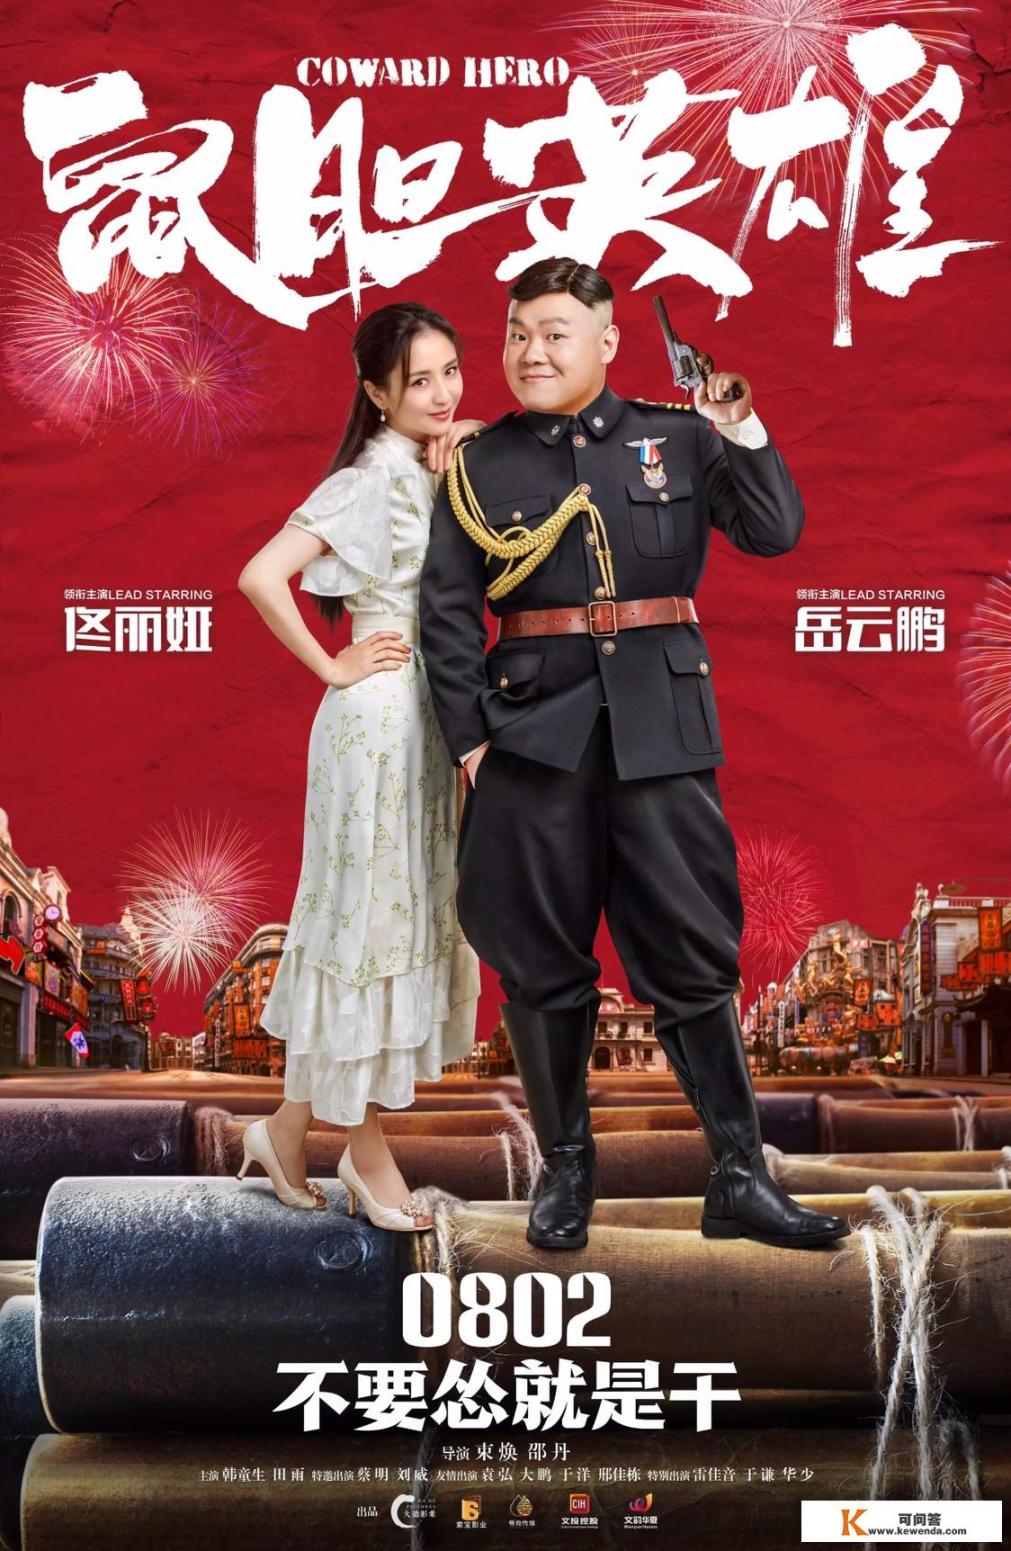 即将公映的喜剧电影《鼠胆英雄》是否能够刷新华语喜剧片票房